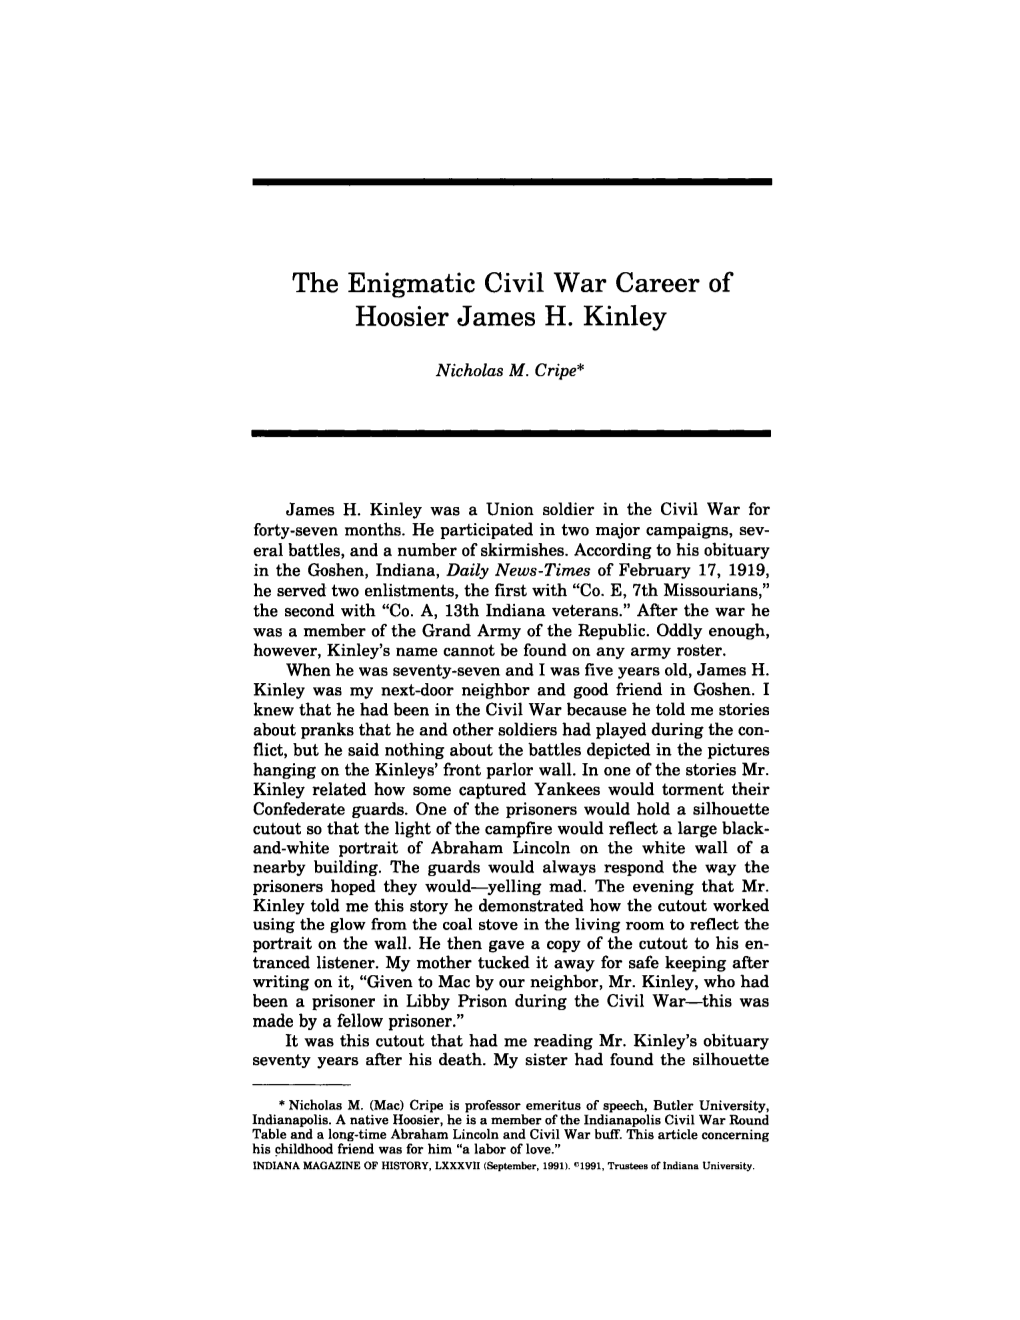 The Enigmatic Civil War Career of Hoosier James H. Kinley